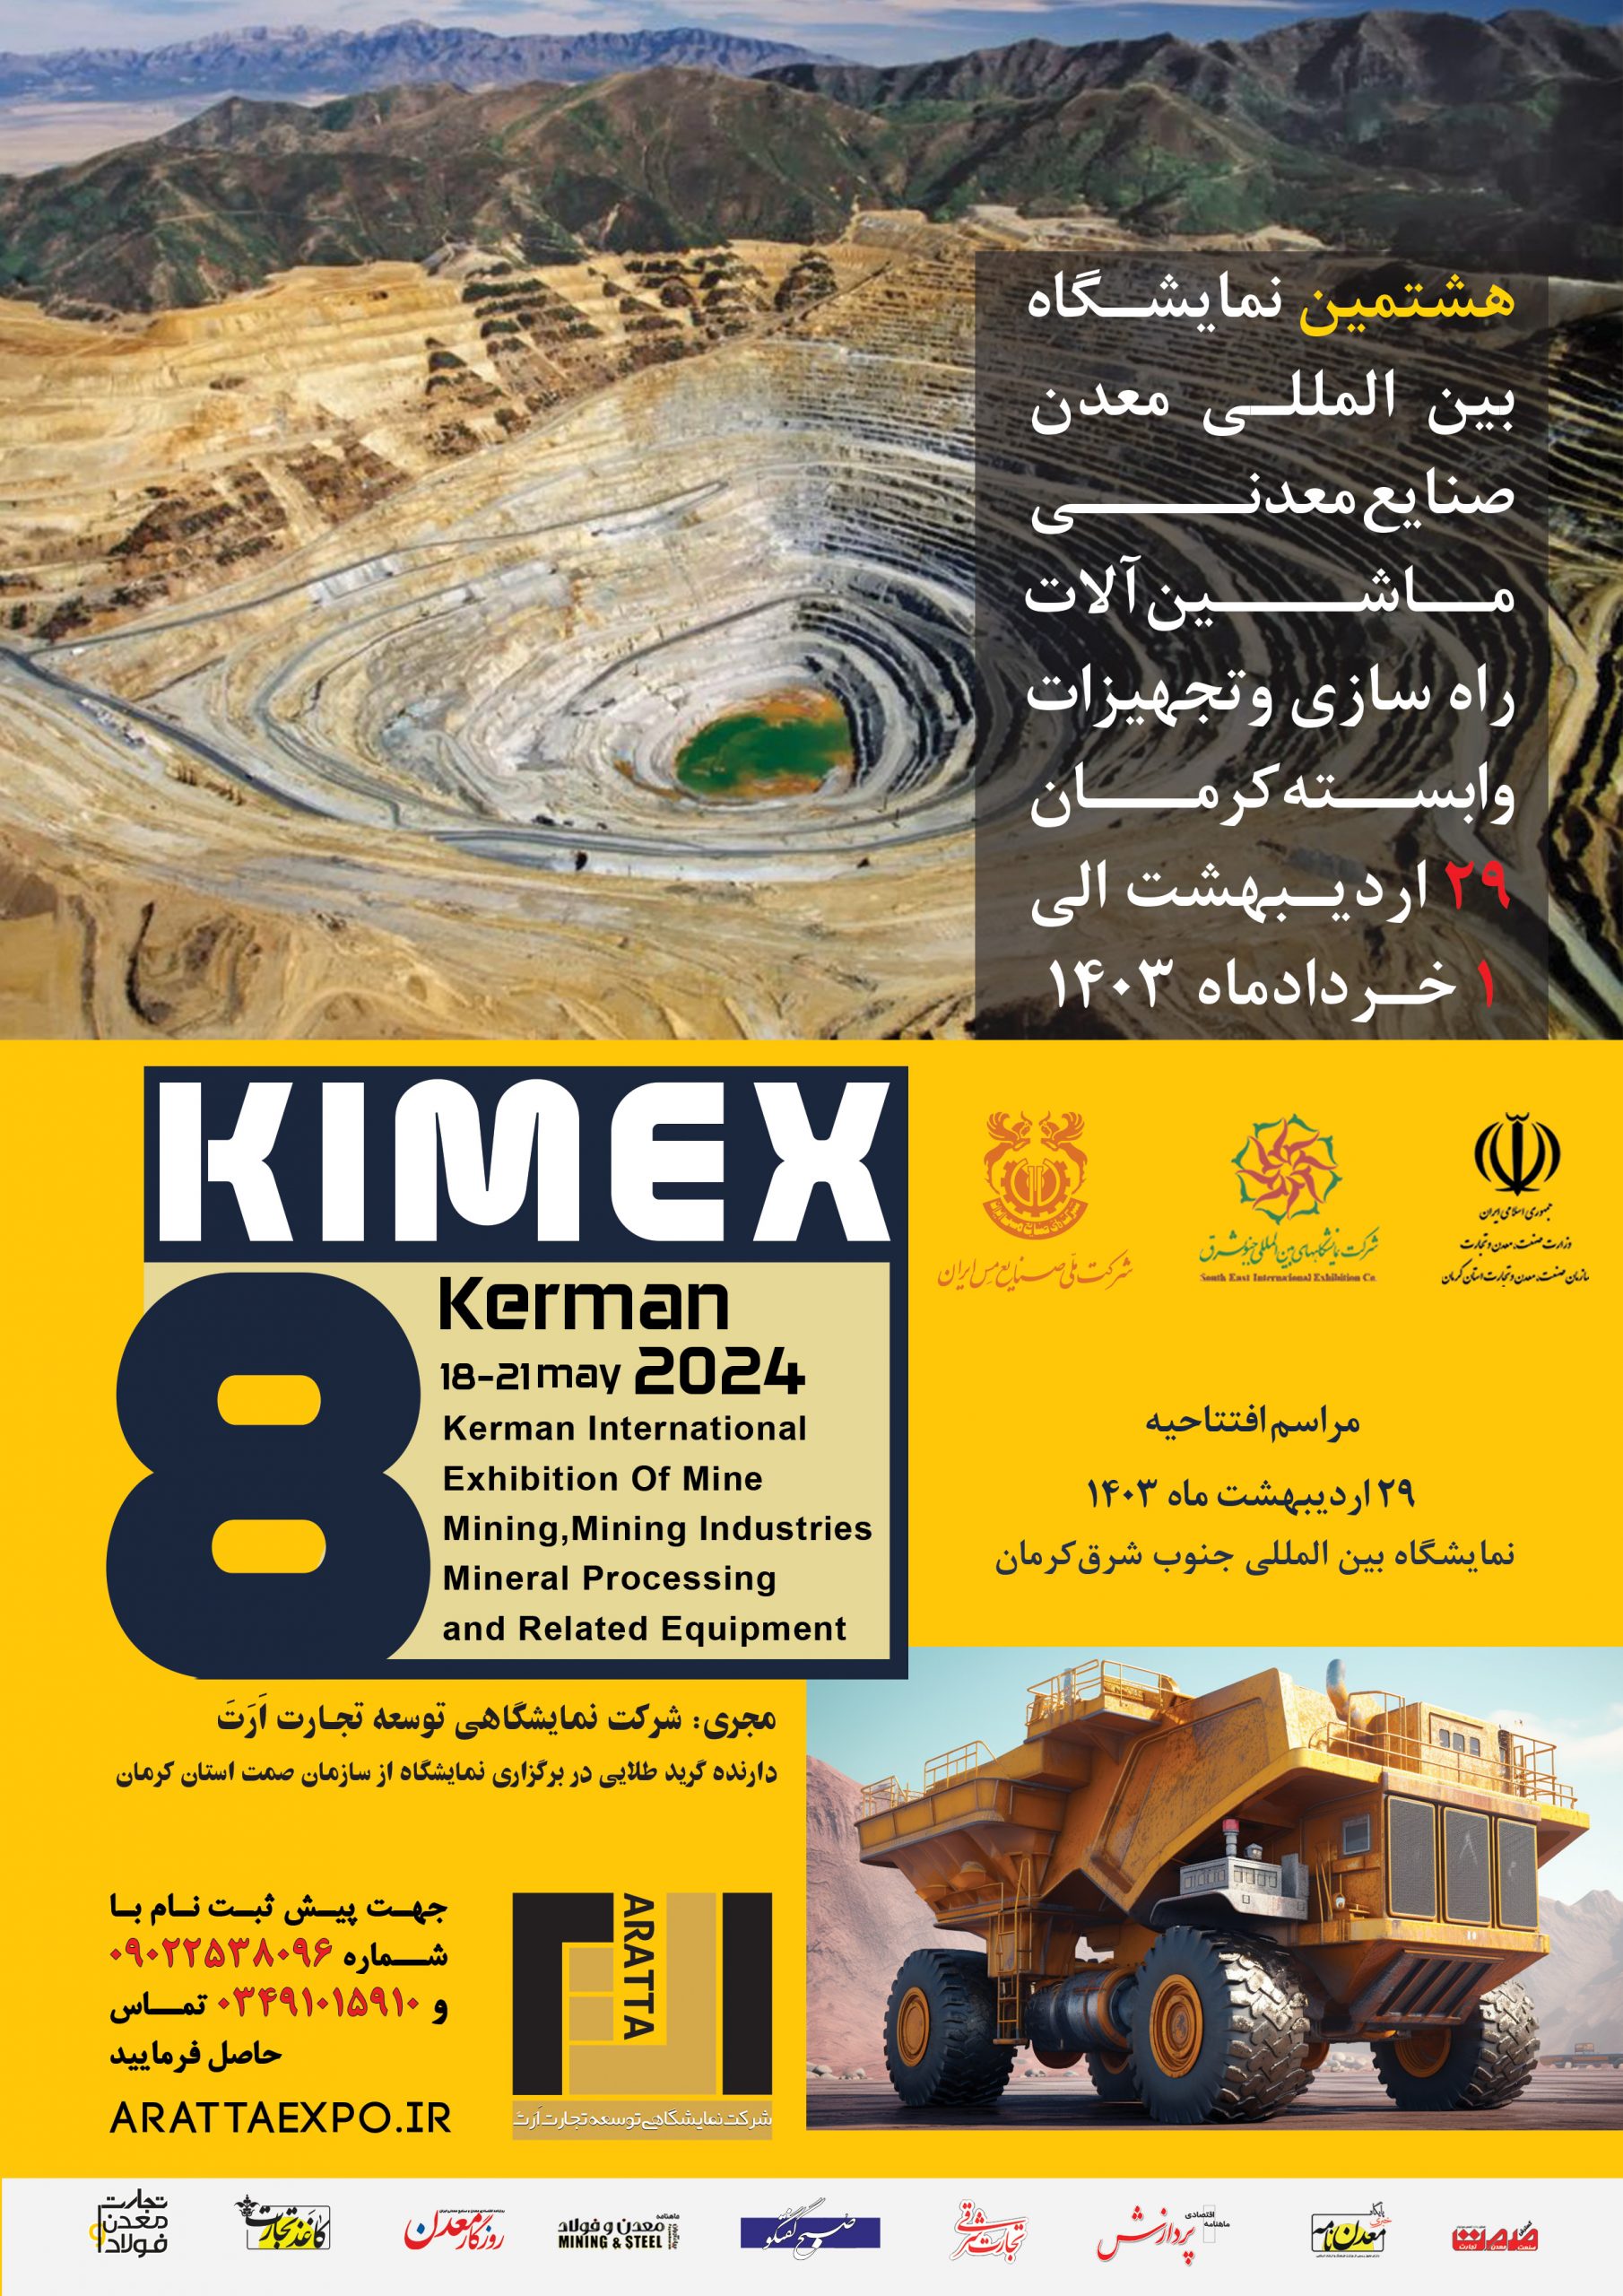 هشتمین نمایشگاه بین المللی معدن، صنایع معدنی، ماشین آلات، راه سازی و تجهیزات وابسته کرمان